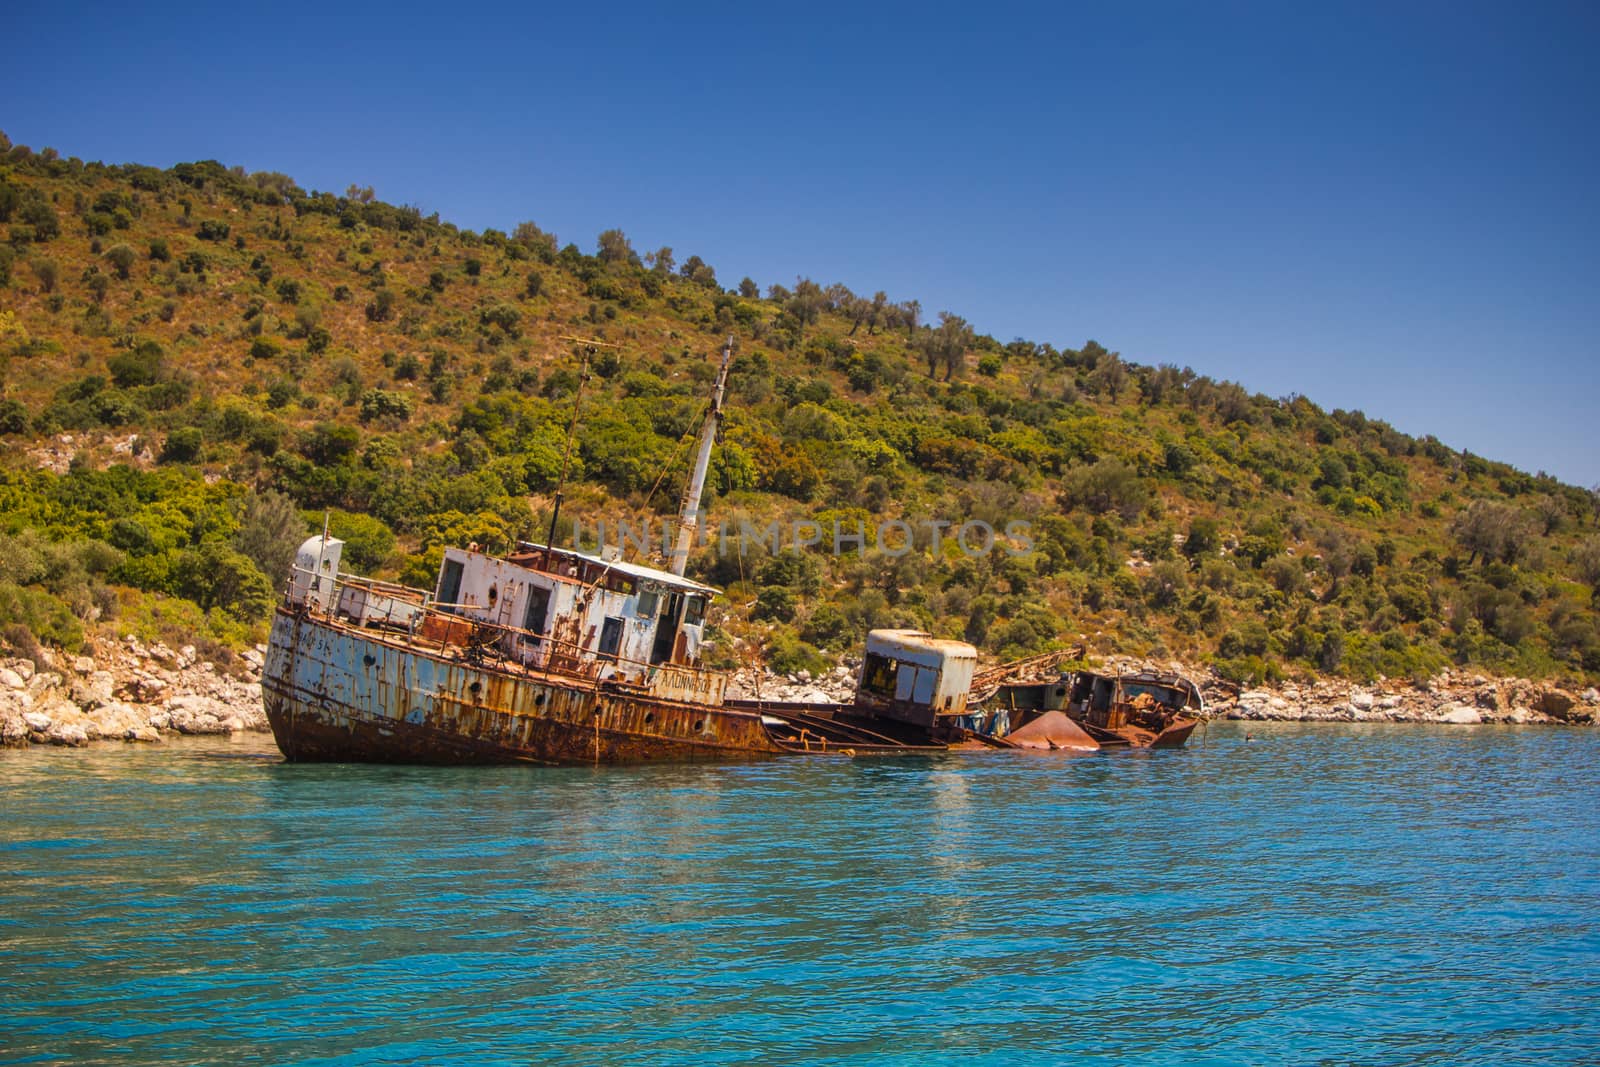 Wreck of stranded vessel in Alonissos, Greece by huntz